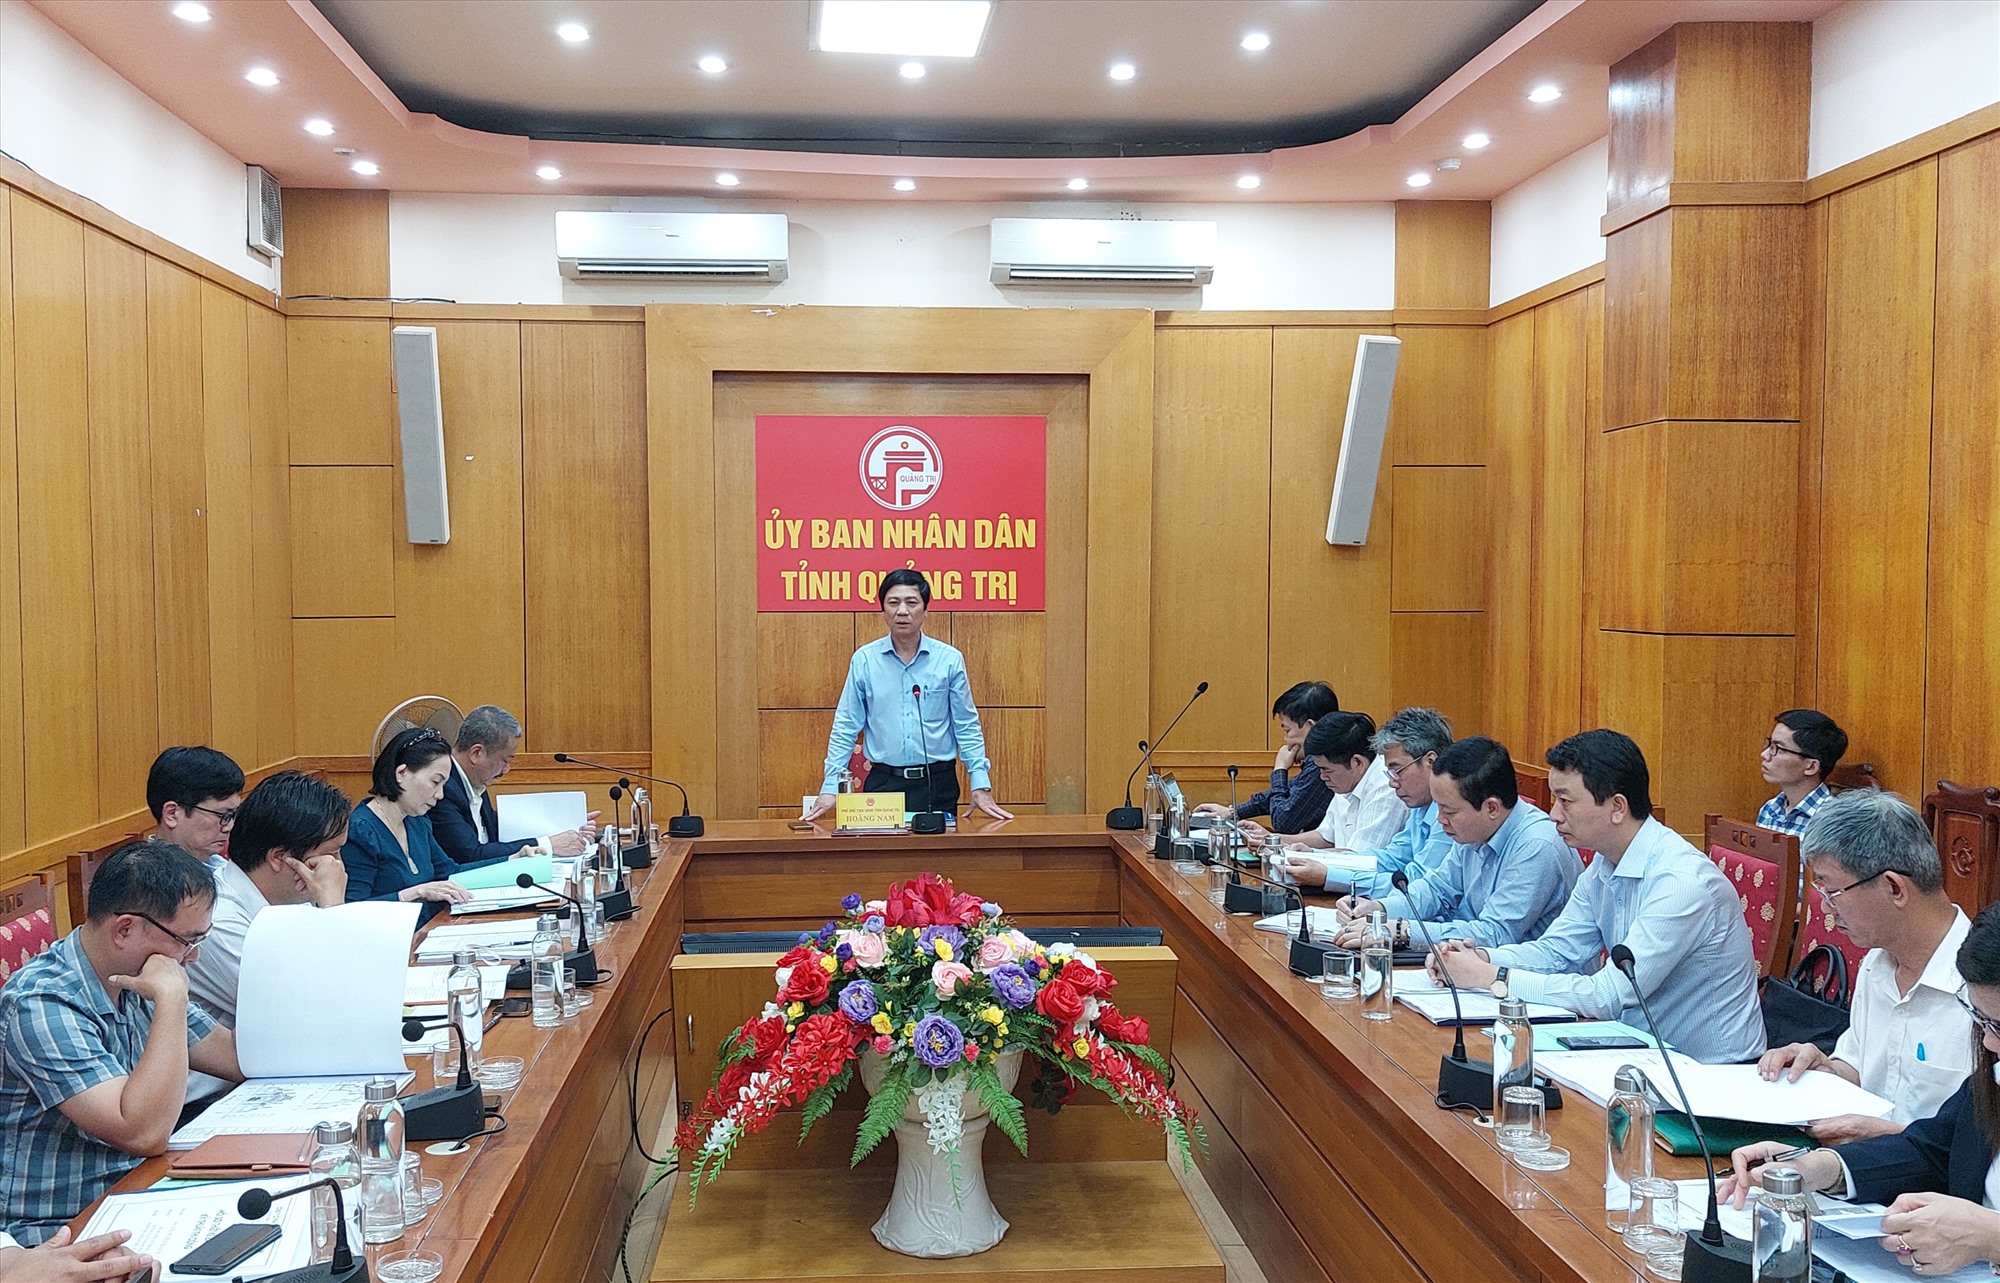 Phó Chủ tịch UBND tỉnh Hoàng Nam yêu cầu hoàn thiện các thủ tục để khởi công dự án đầu tư tôn tạo lăng mộ danh nhân Bùi Dục Tài trong năm 2023 - Ảnh: N.T.H